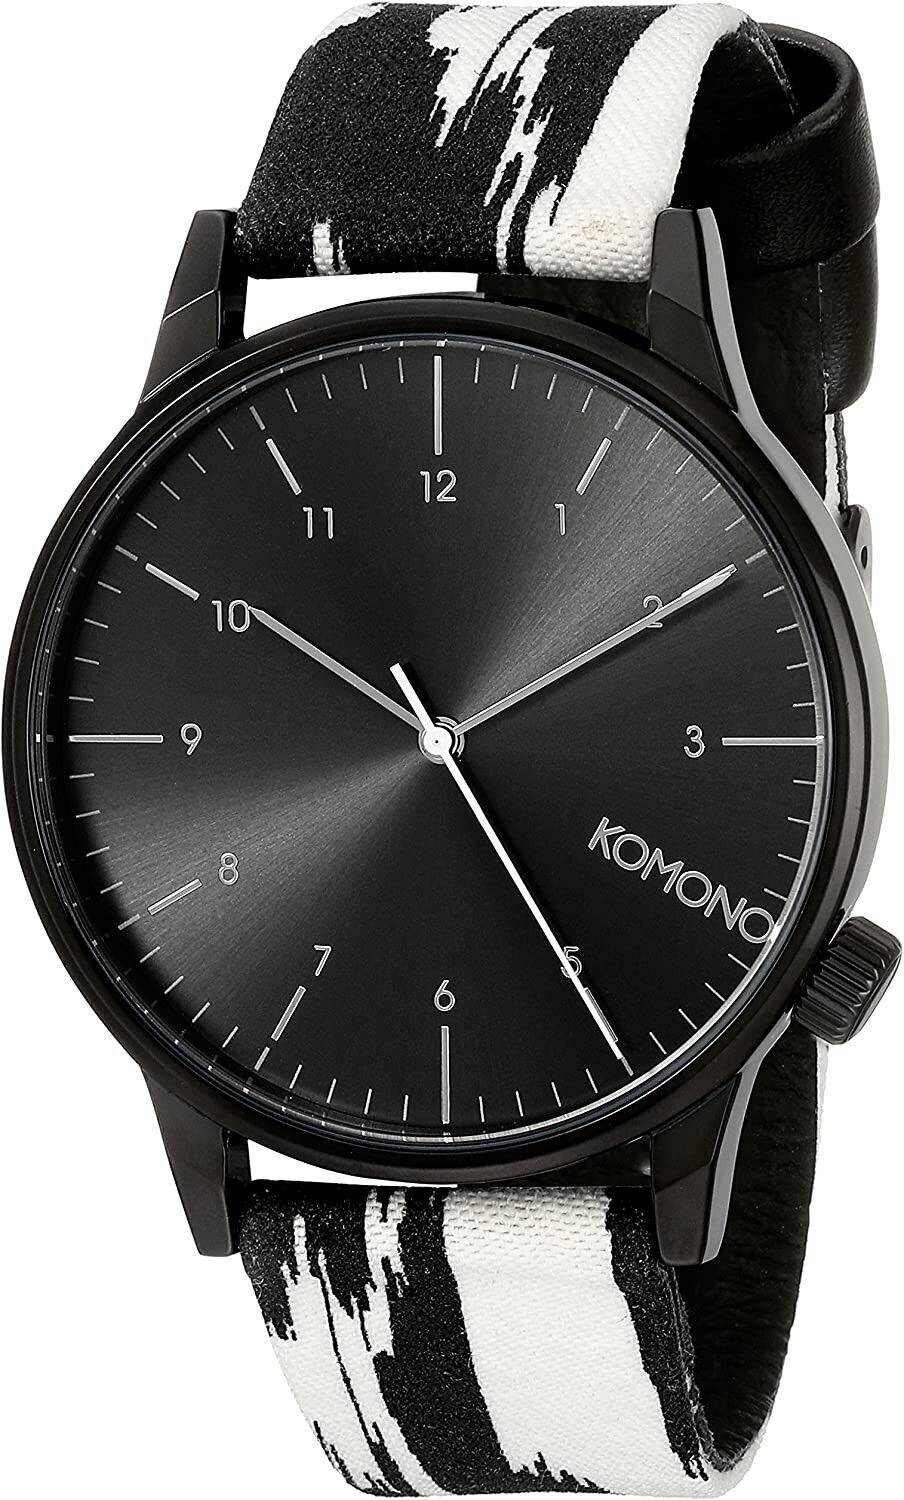 Winston regal black watch from Komono is in Regaliz Funwear